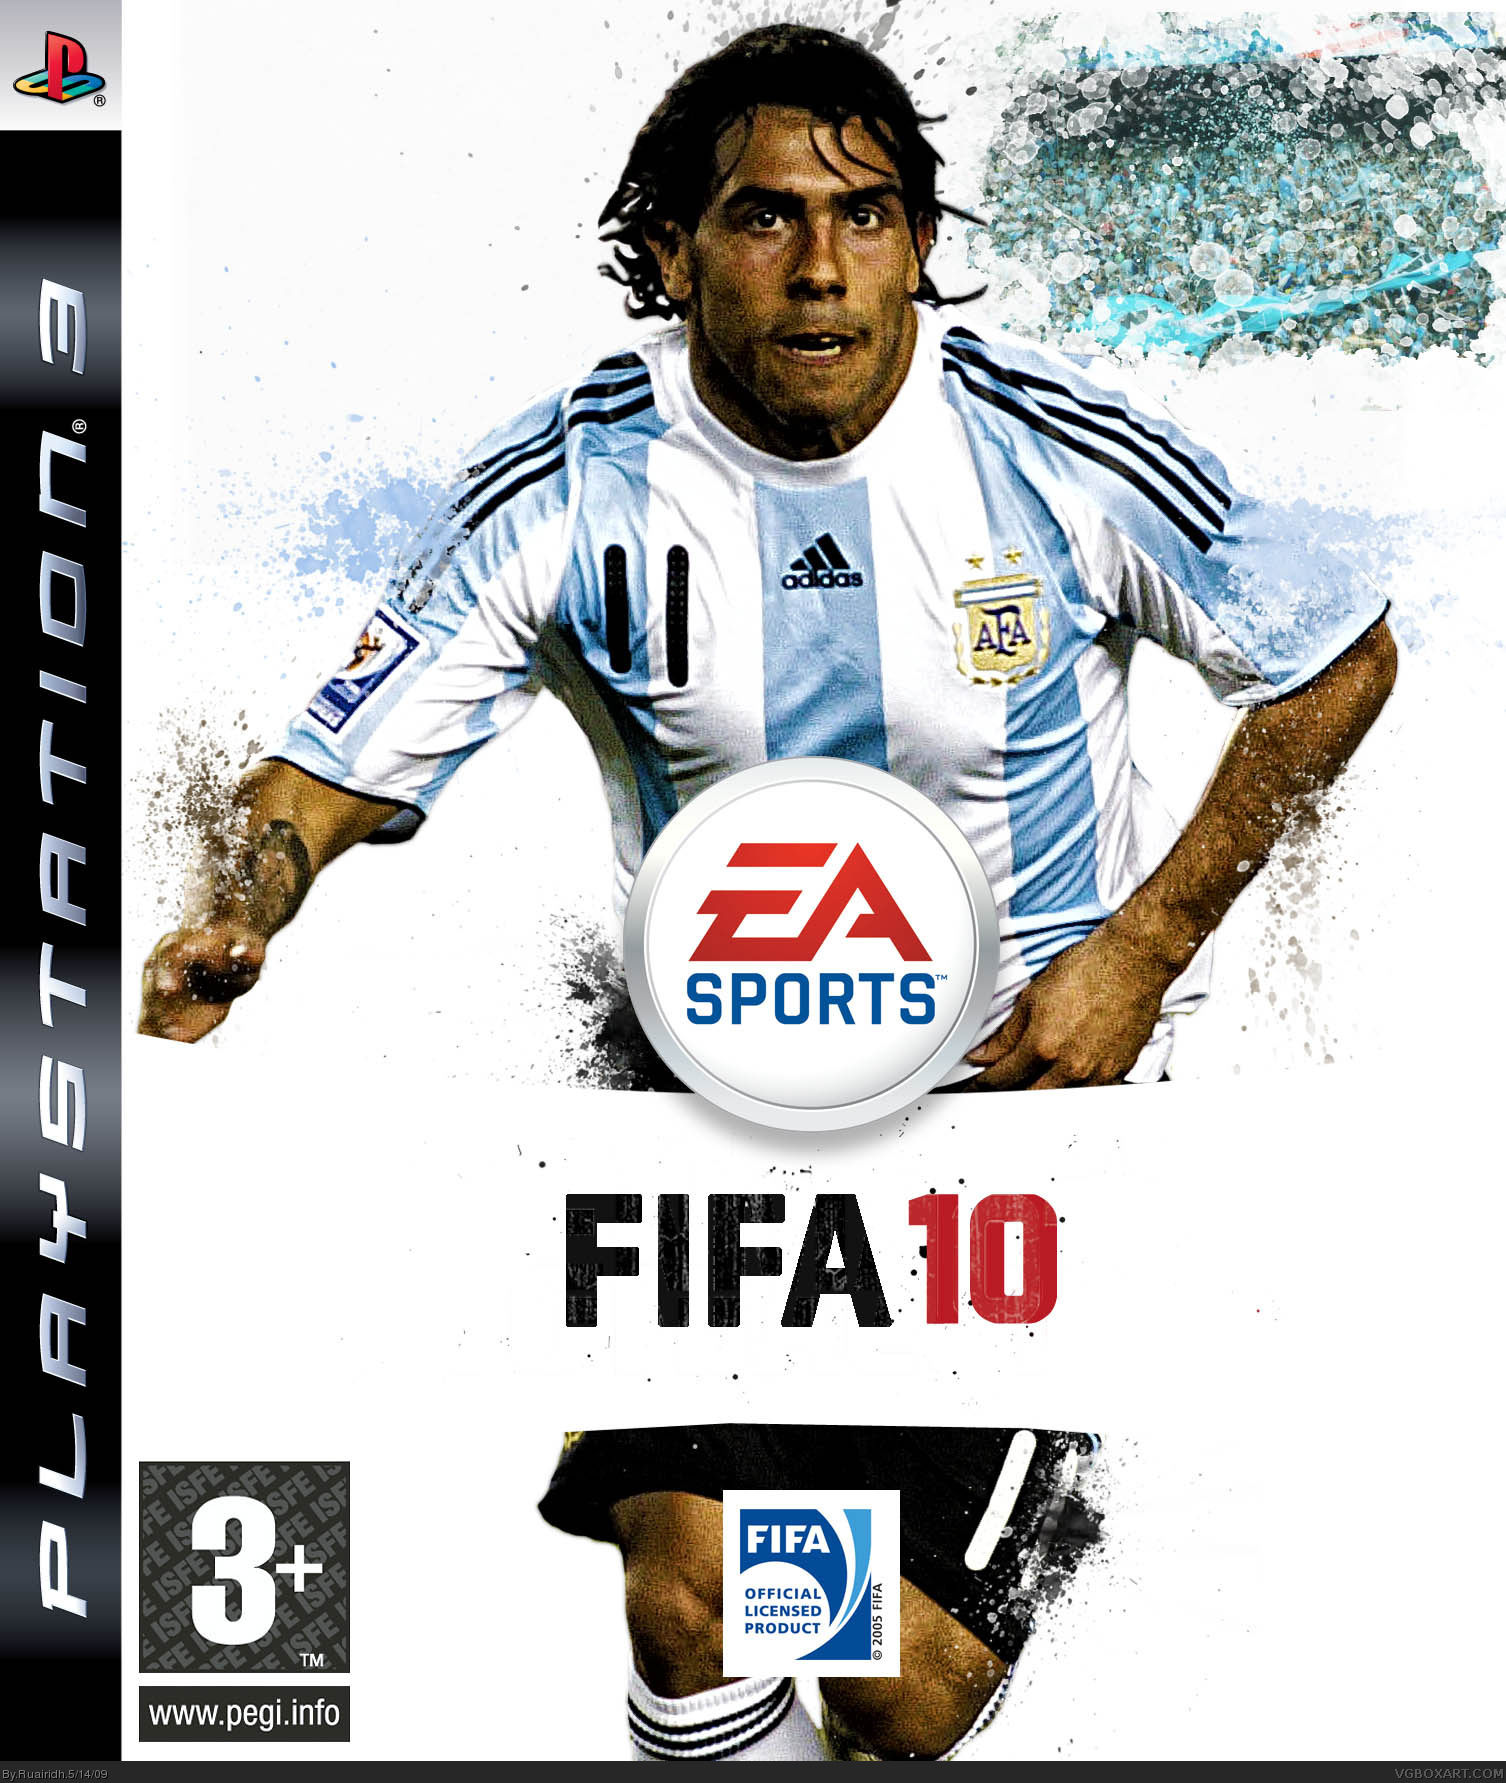 Fifa музыка. FIFA 10 ps3. FIFA 10 обложка PC. FIFA 2009 обложка. FIFA 09 обложка.